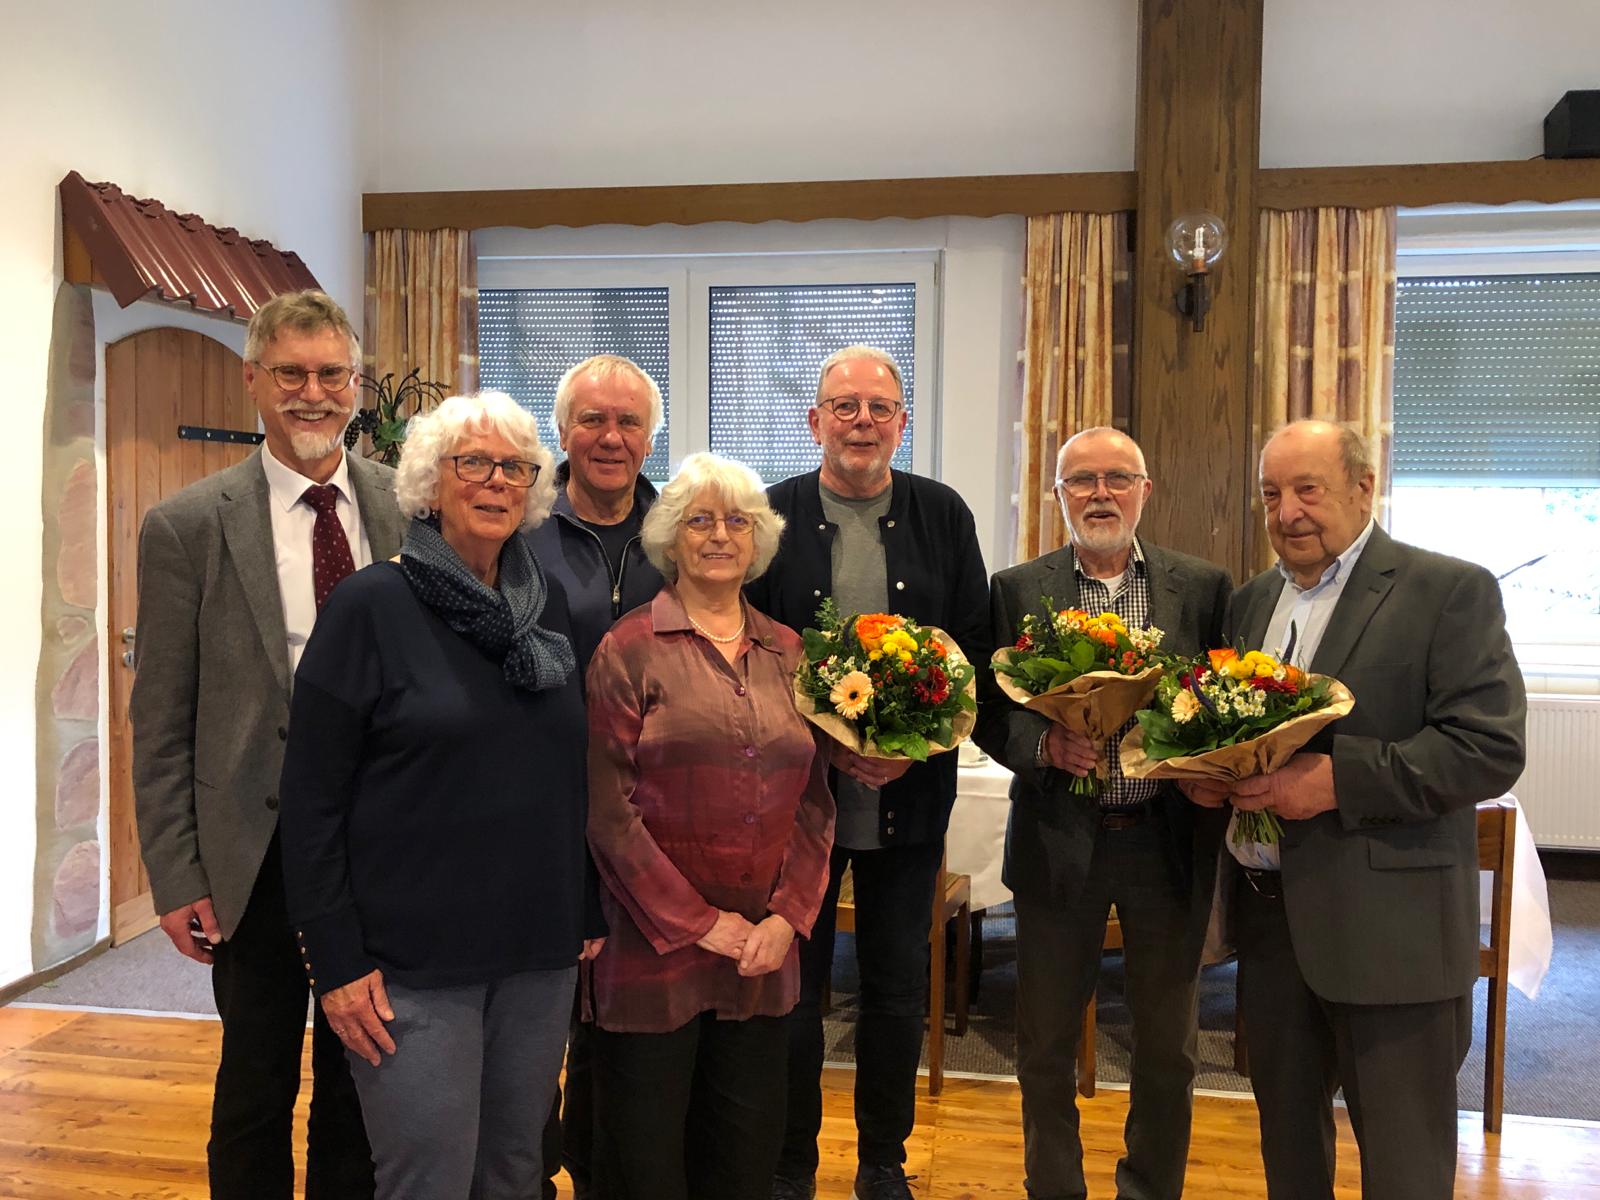 Das Redaktionsteam (von rechts nach links): Helmut Radi, Karl Dietrich, Michael Geidies, Adelheid Röller, Günter Opitz sowie Brigitte Weiß und Michael Thöne